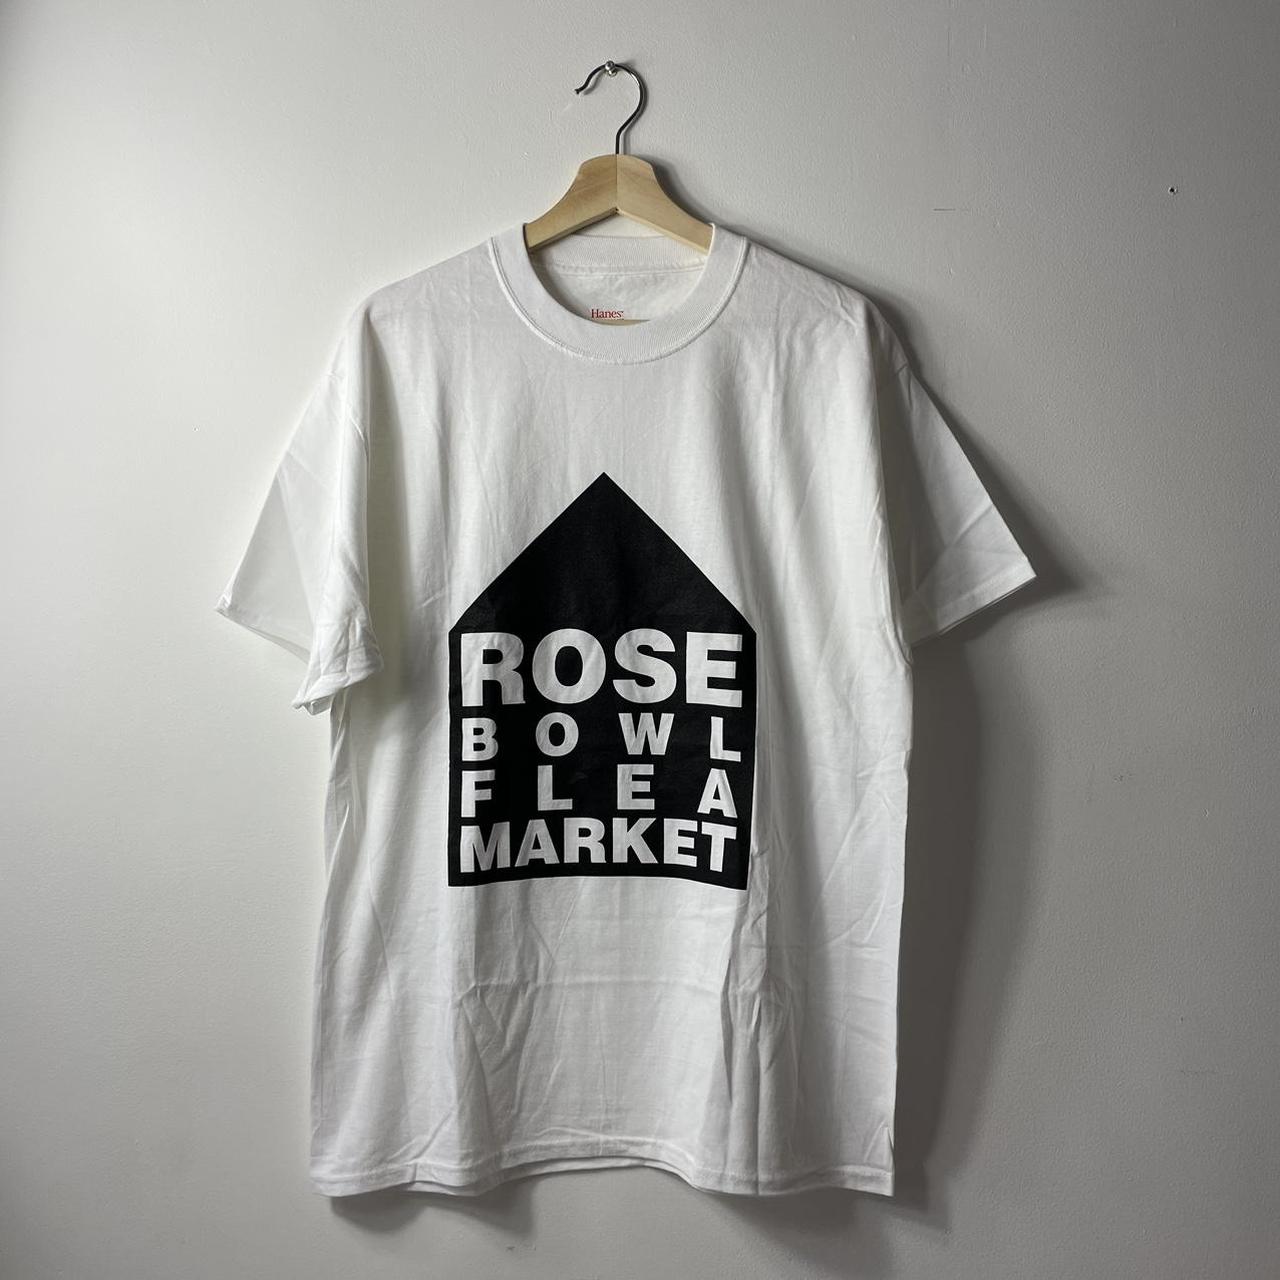 Dover Street Market Men's White T-shirt